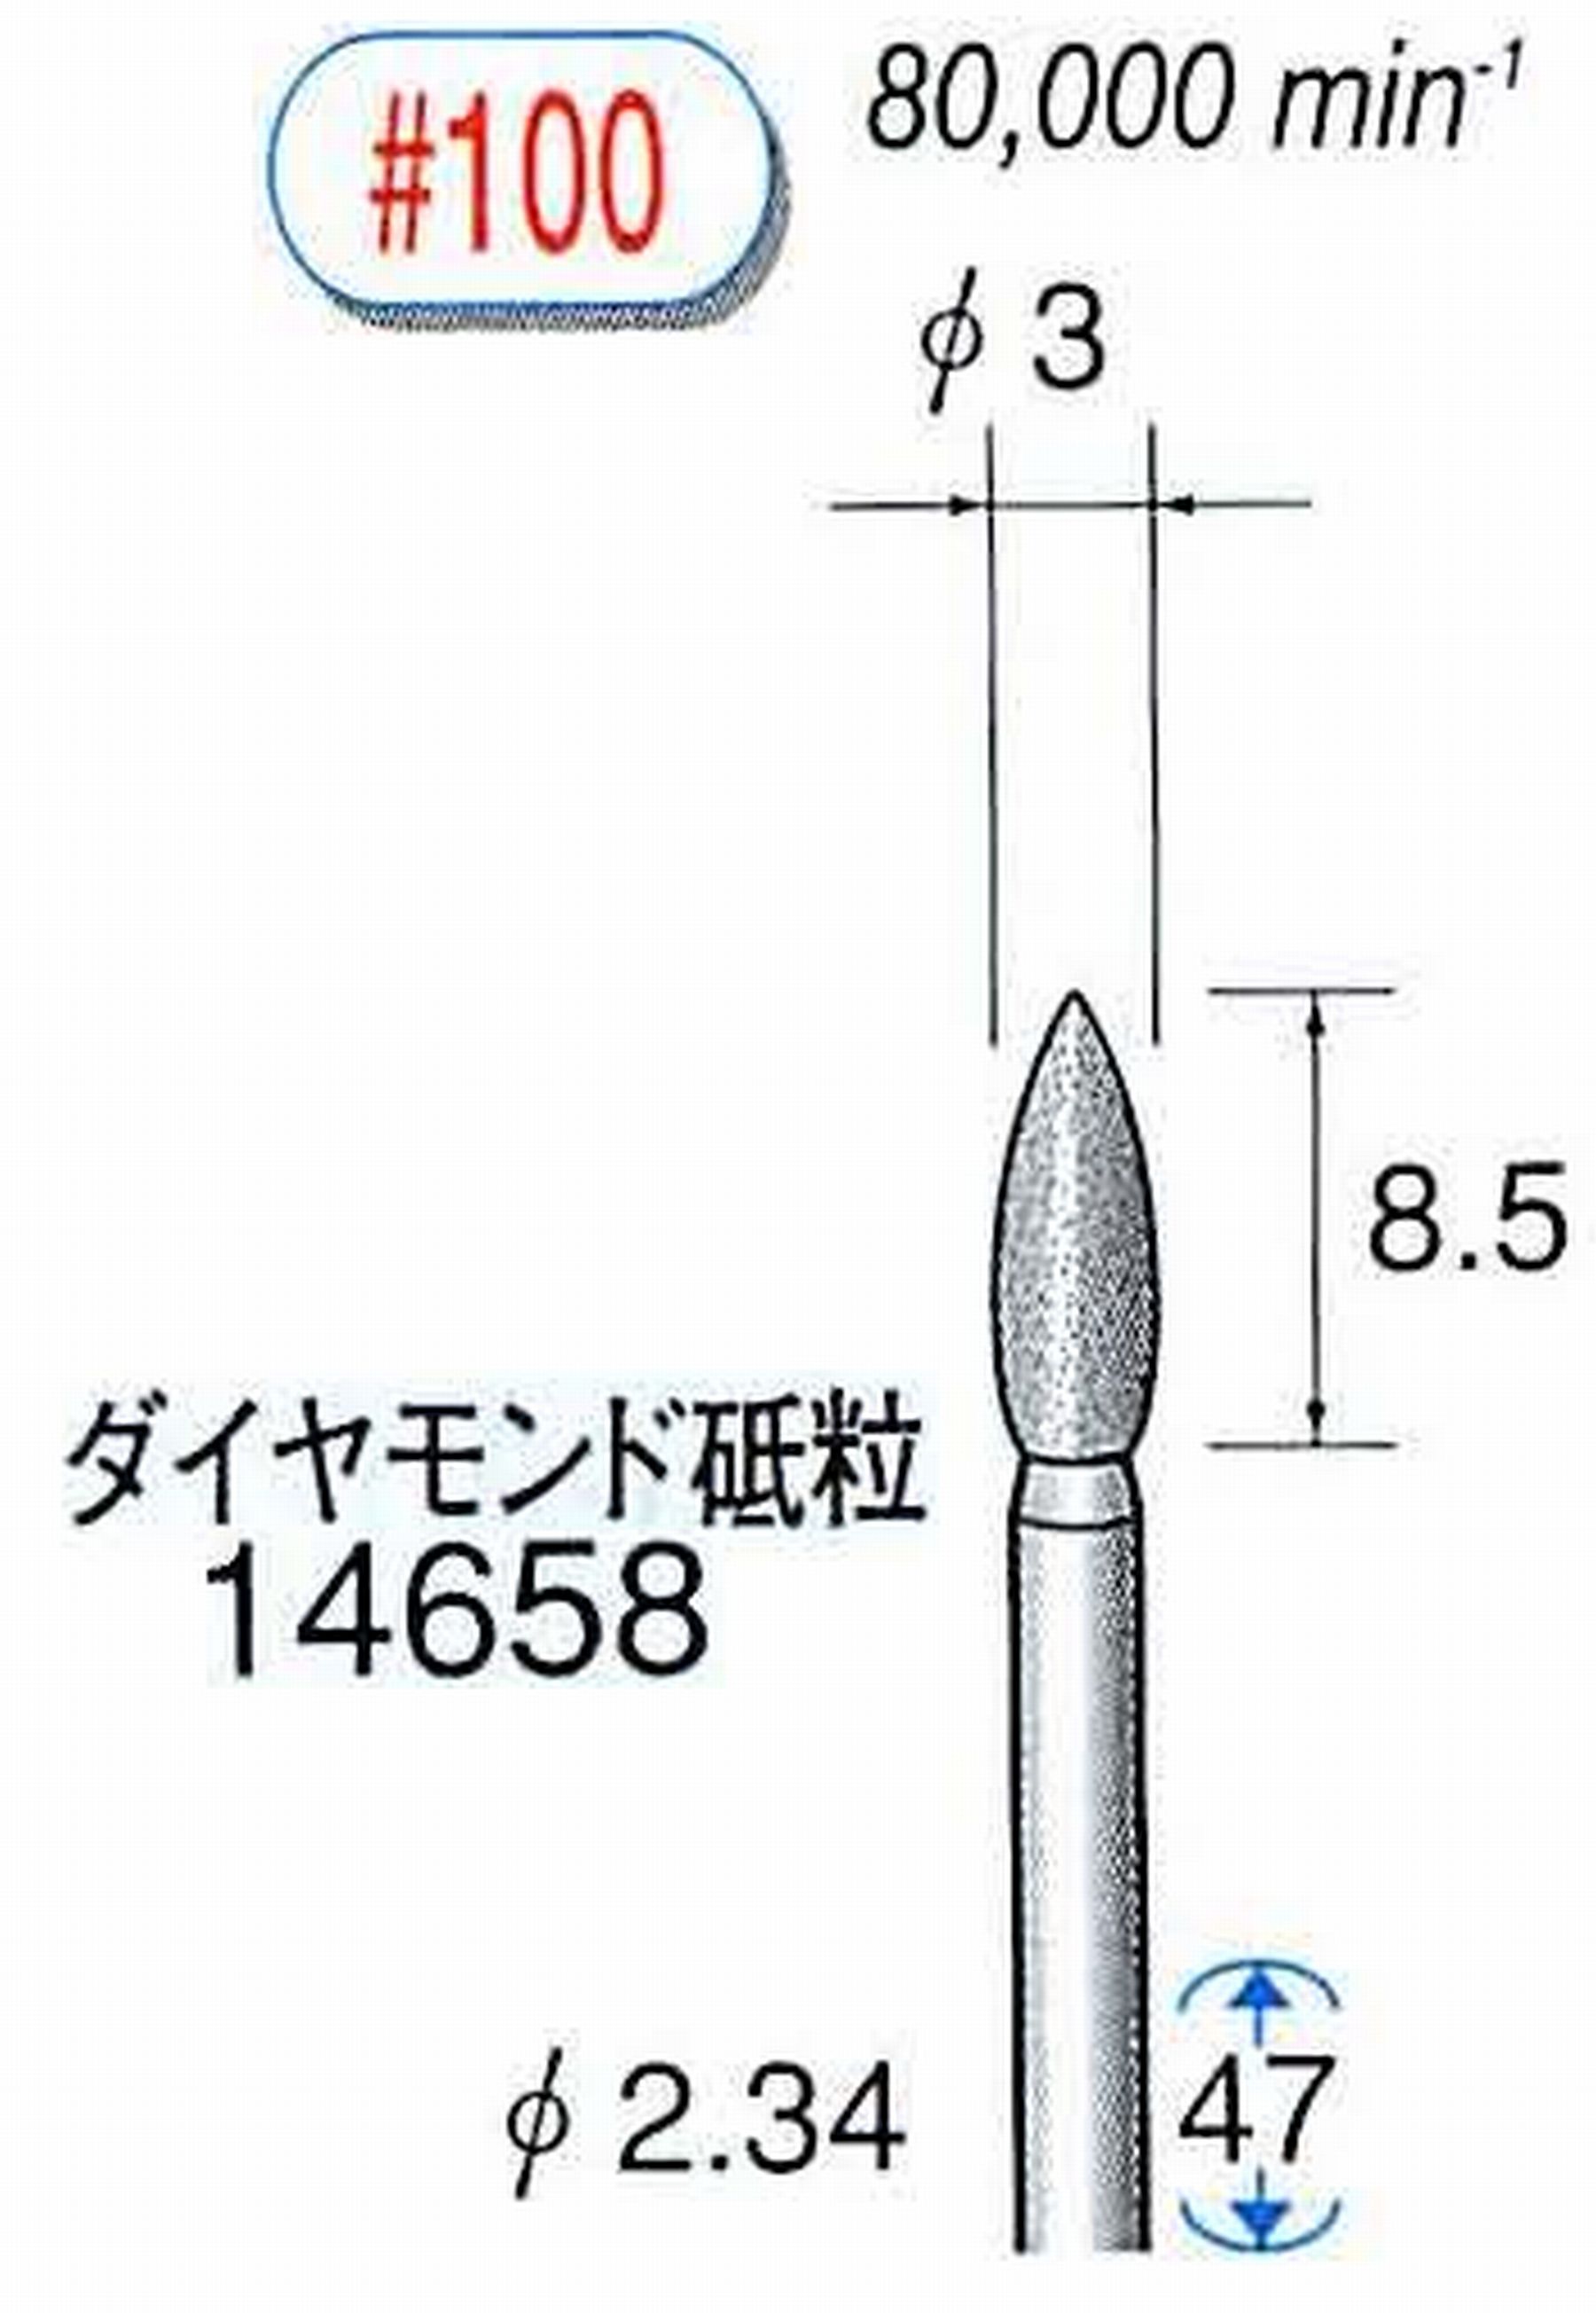 ナカニシ/NAKANISHI ダイヤモンドバー メタルボンドタイプ ダイヤモンド砥粒 軸径(シャンク)φ2.34mm 14658